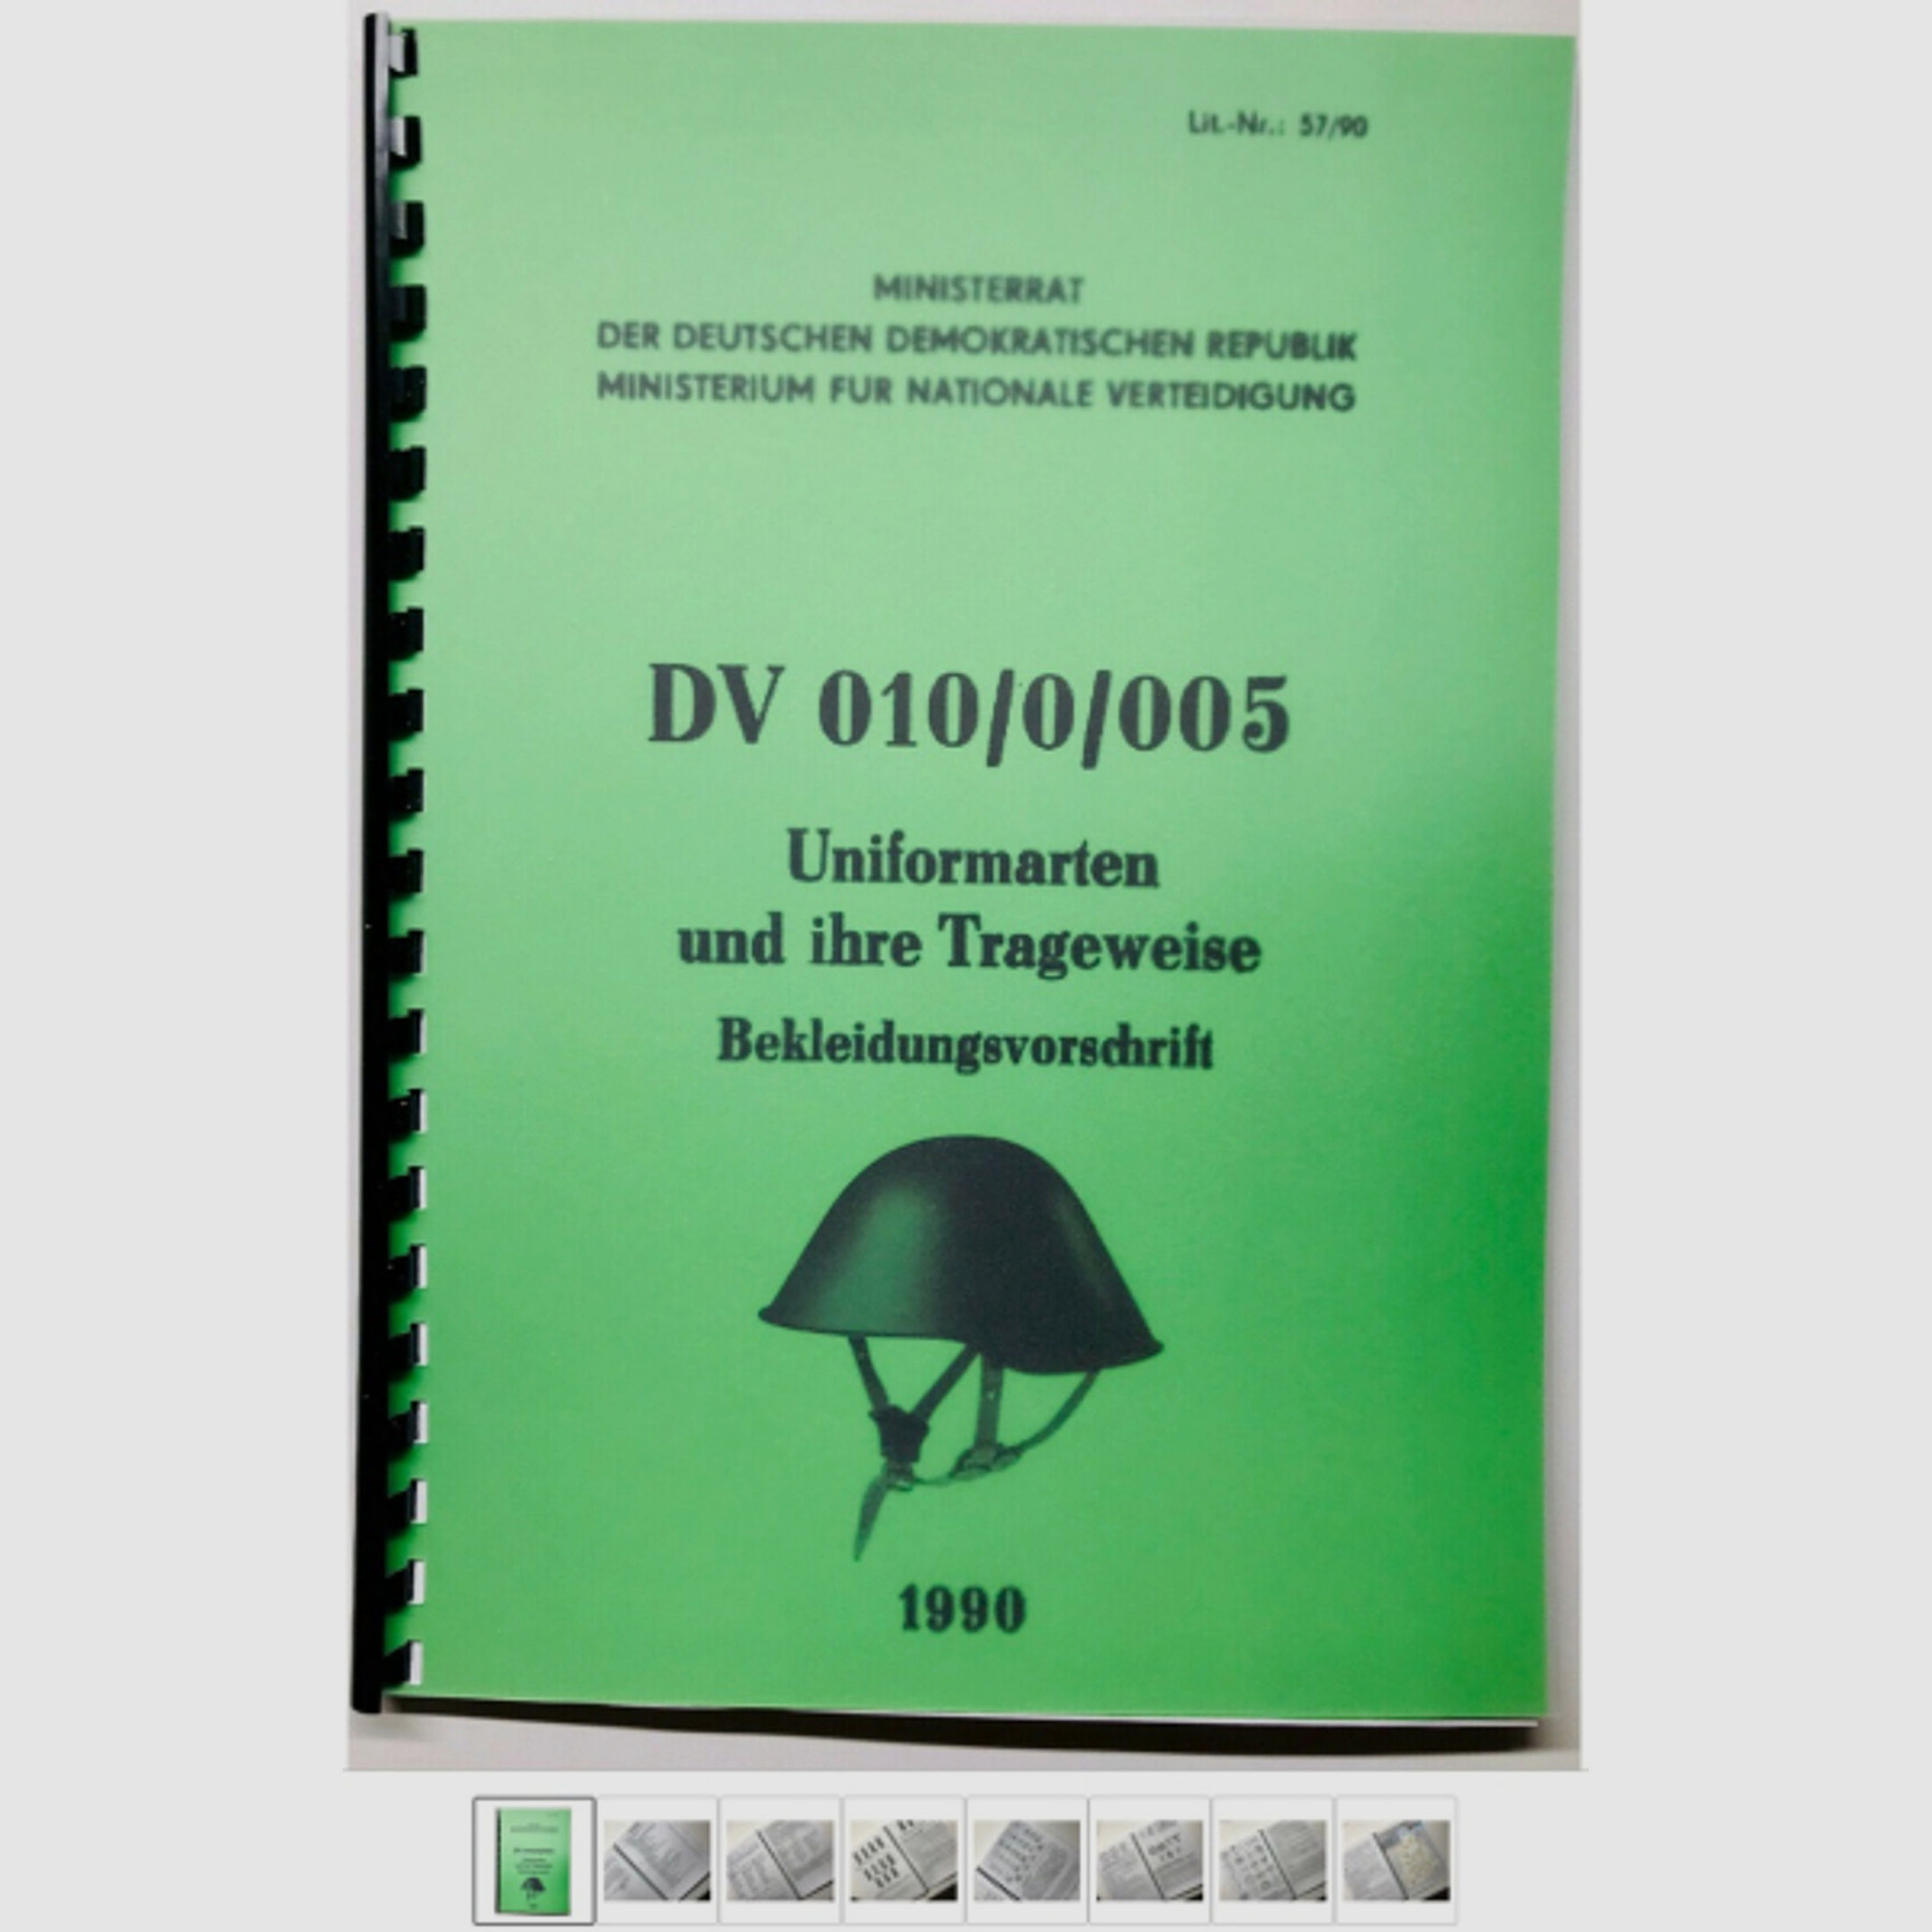 Nachdruck NVA Dienstvorschrift DV 010/0/005 Uniformarten + ihre Trageweise DDR AK47 Makarov Simonov